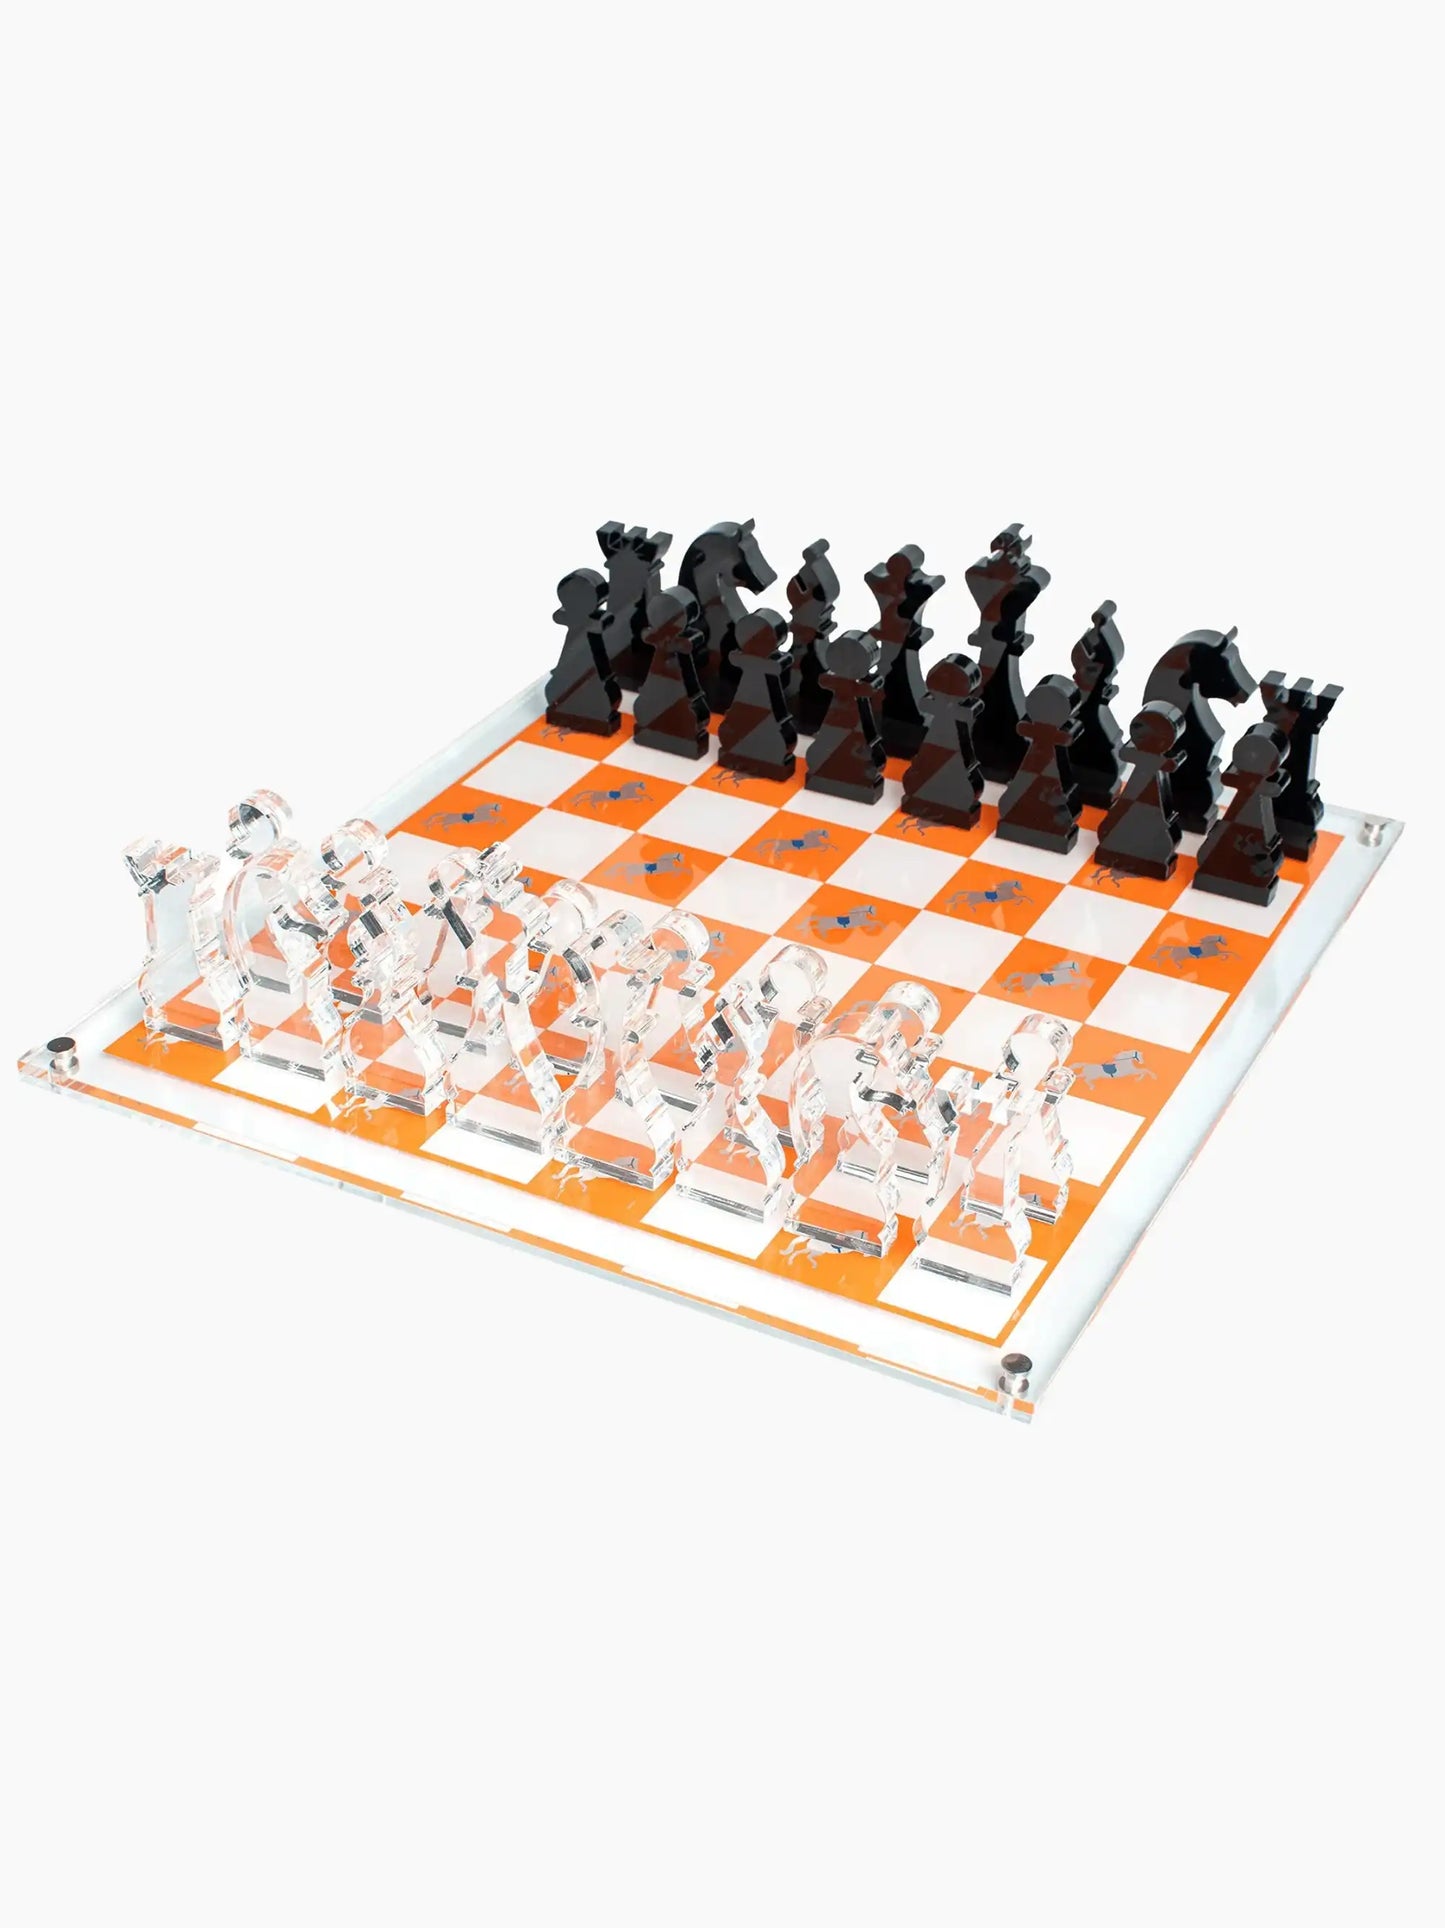 Horses Chess Board